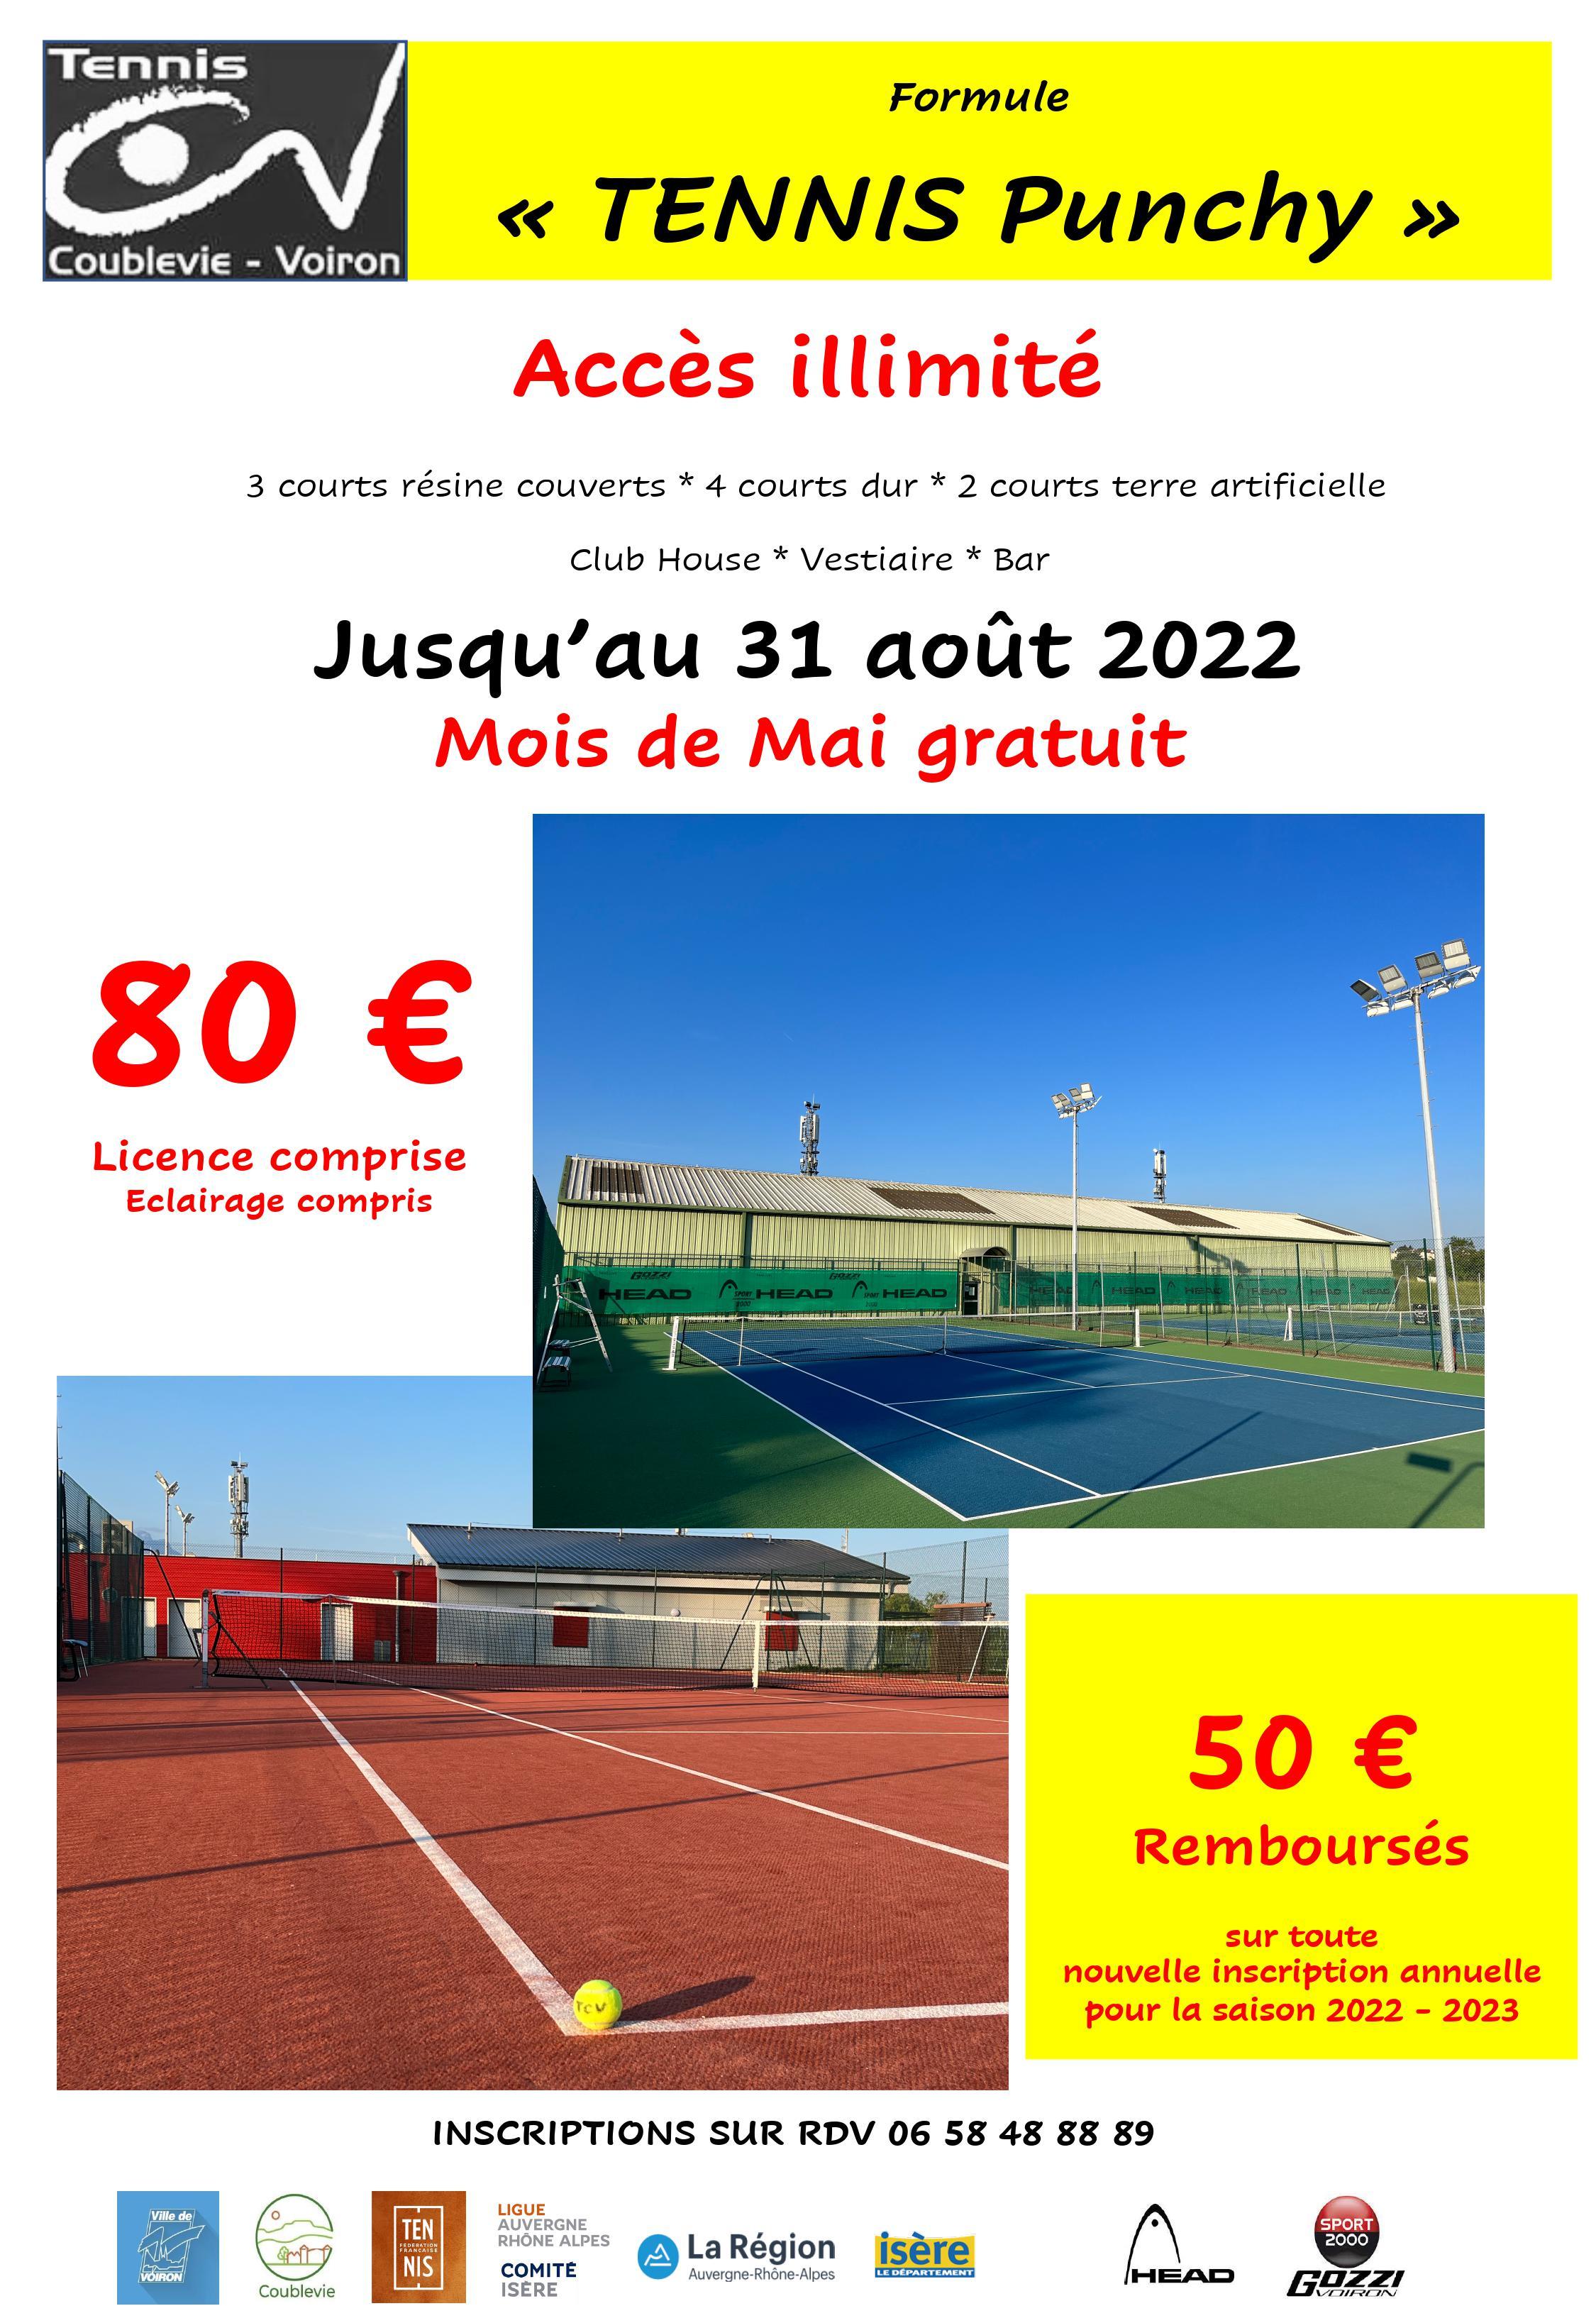 Image de couverture - Information Tennis Coublevie Voiron